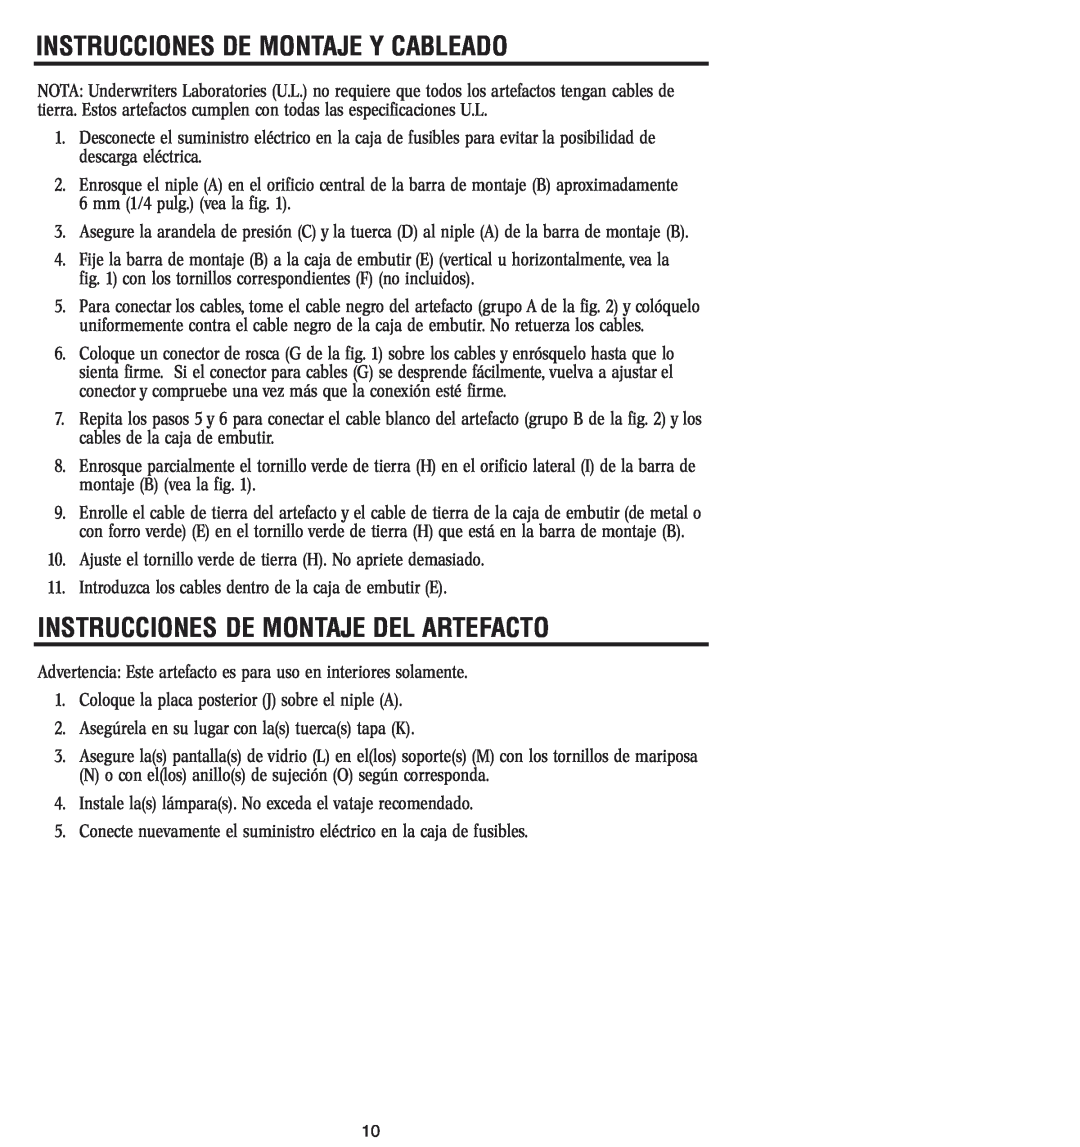 Westinghouse W-349 owner manual Instrucciones De Montaje Y Cableado, Instrucciones De Montaje Del Artefacto 